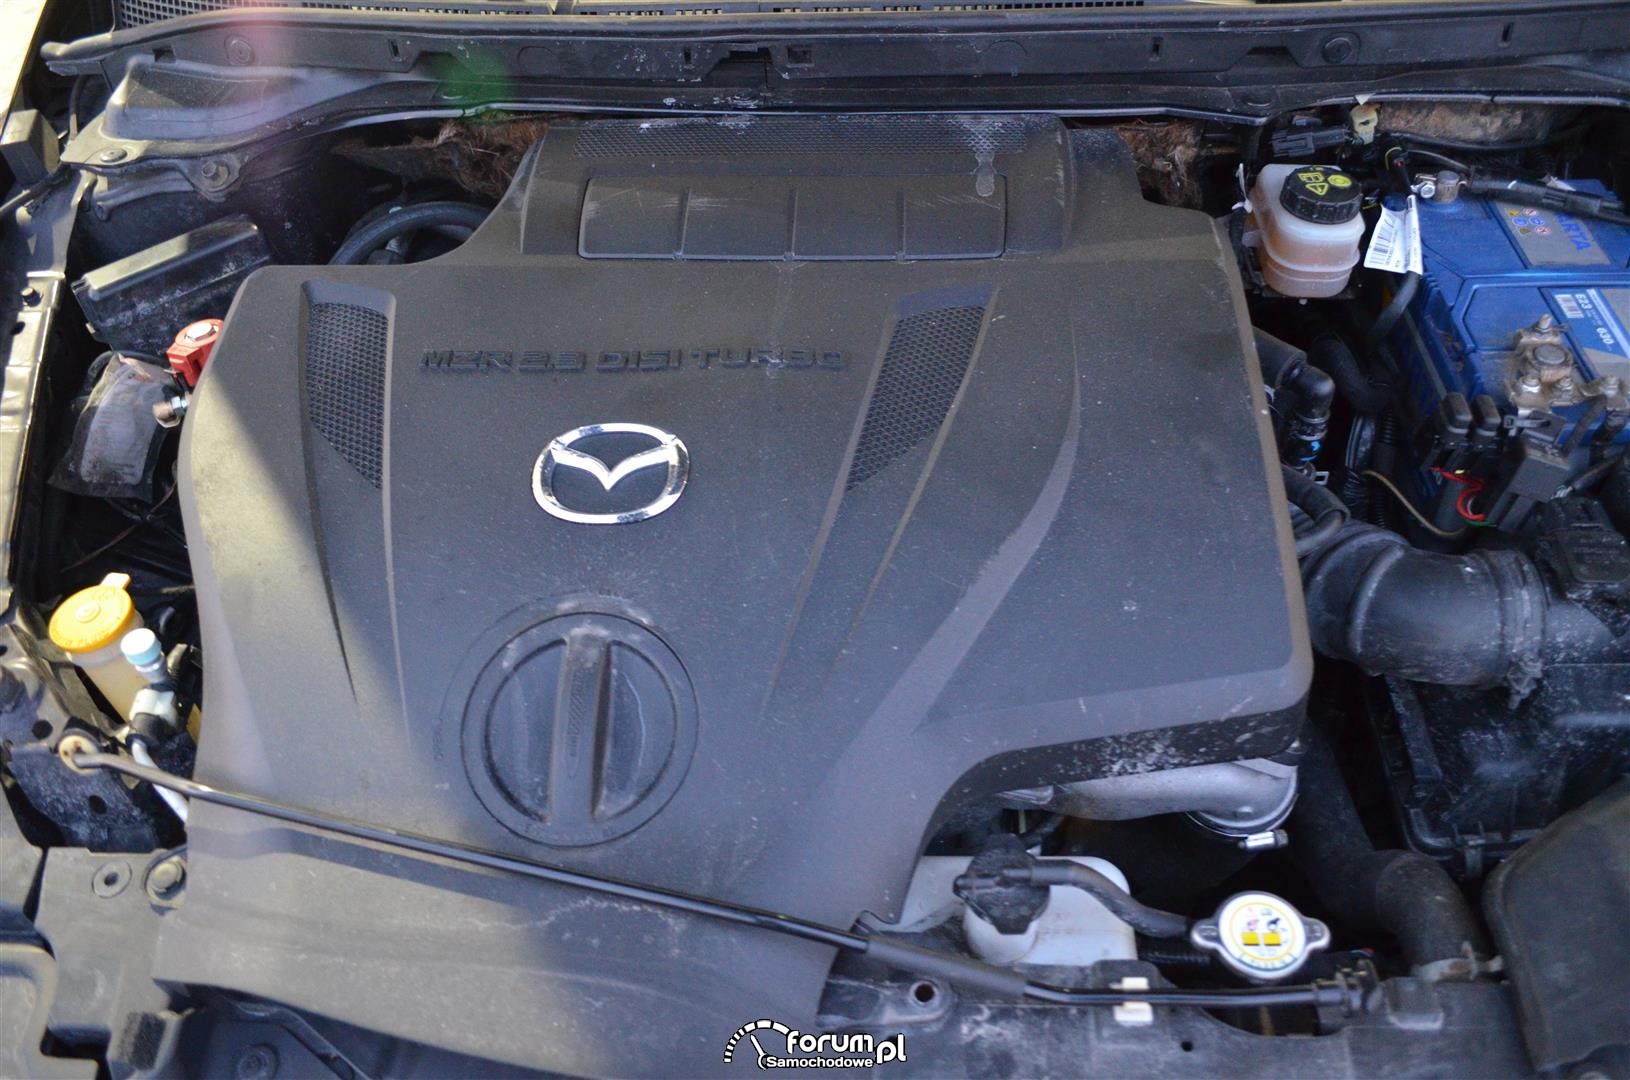 Mazda CX7, silnik 2,3 DISITurbo MZR zdjęcie thinktwice